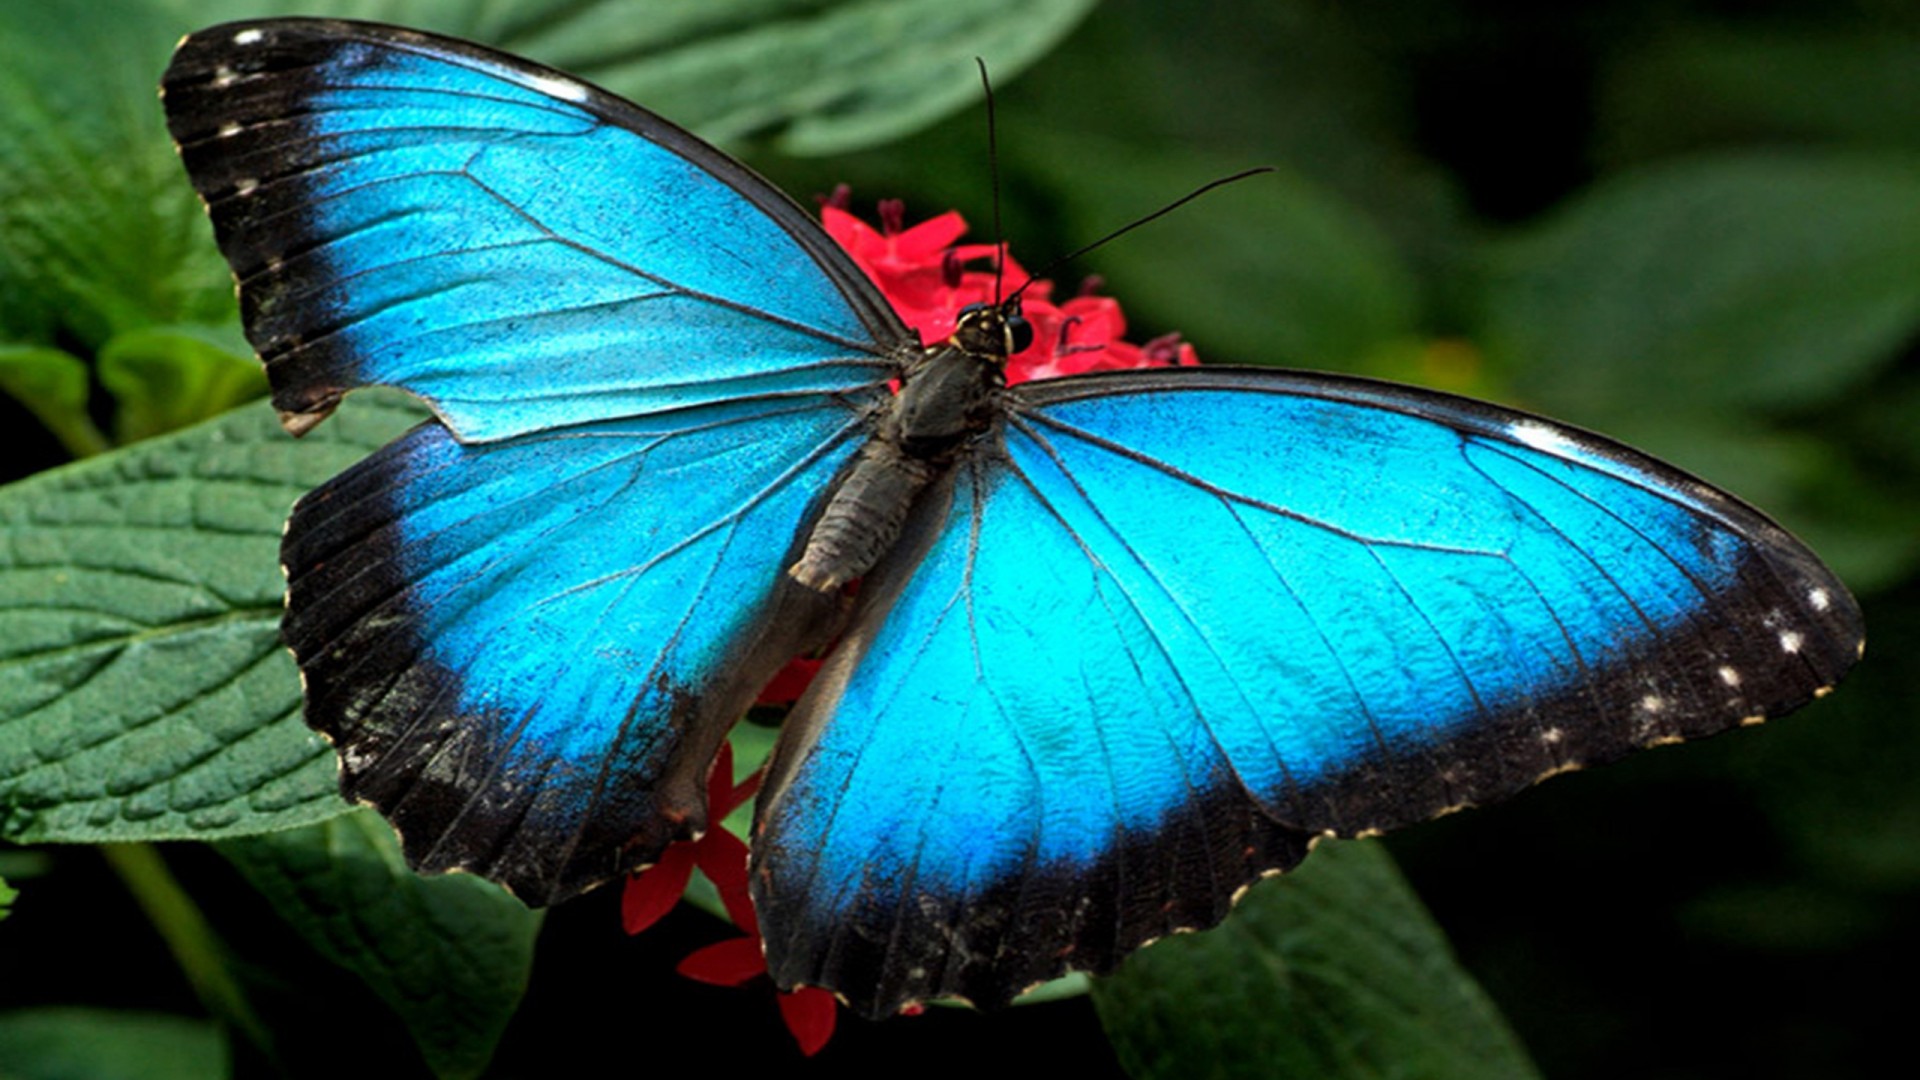 Blue-butterflies-Wallpaper-Hd-1920x1080.jpg